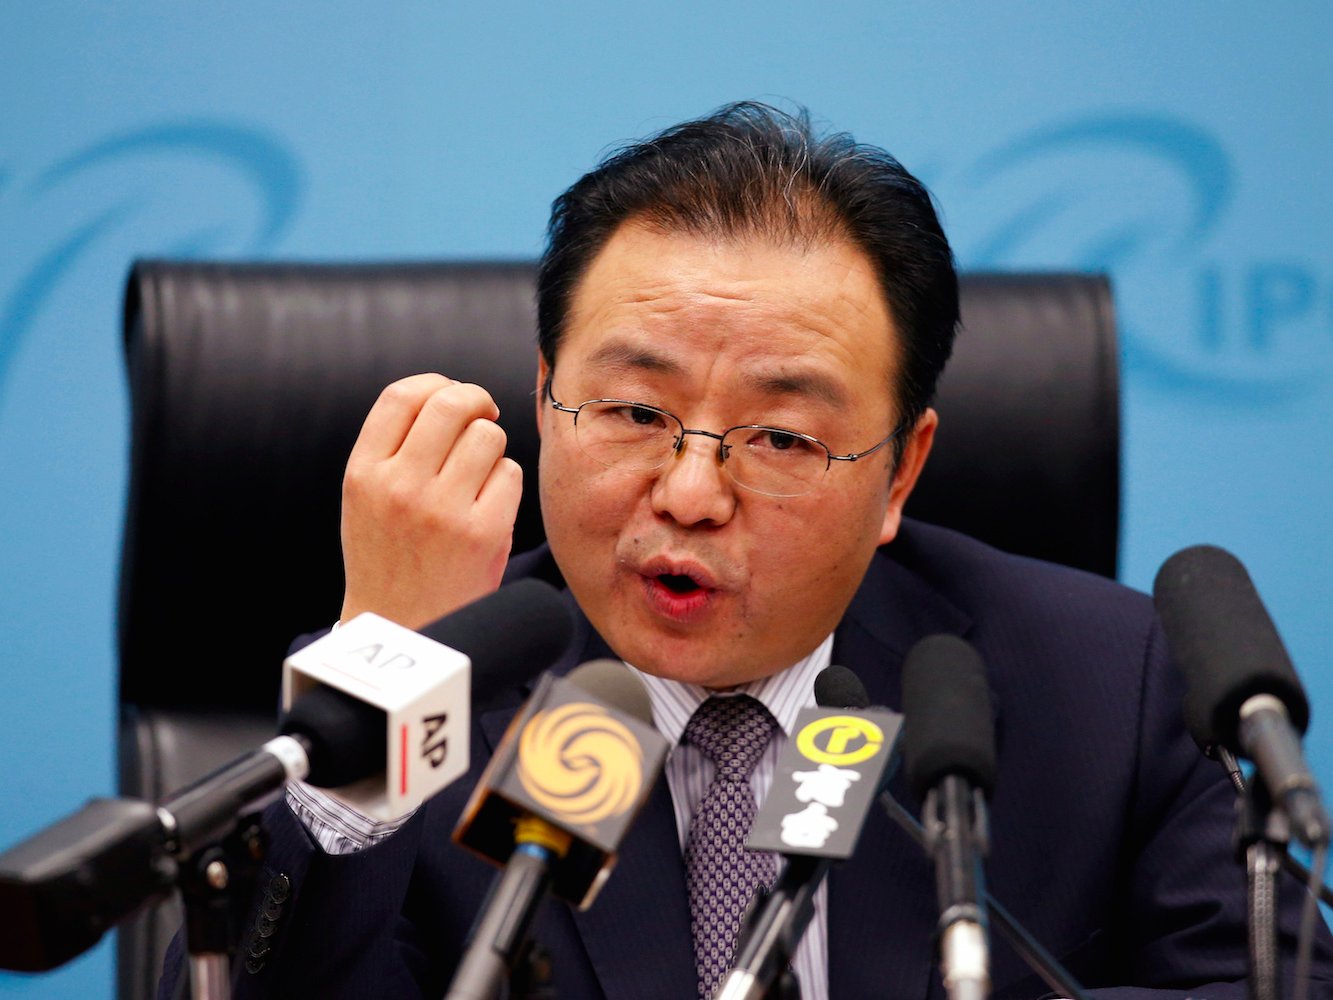 Nhà ngoại giao Trung Quốc Ouyang Yujing phát biểu về tình hình Biển Đông hiện nay tại Bắc Kinh ngày 6/5